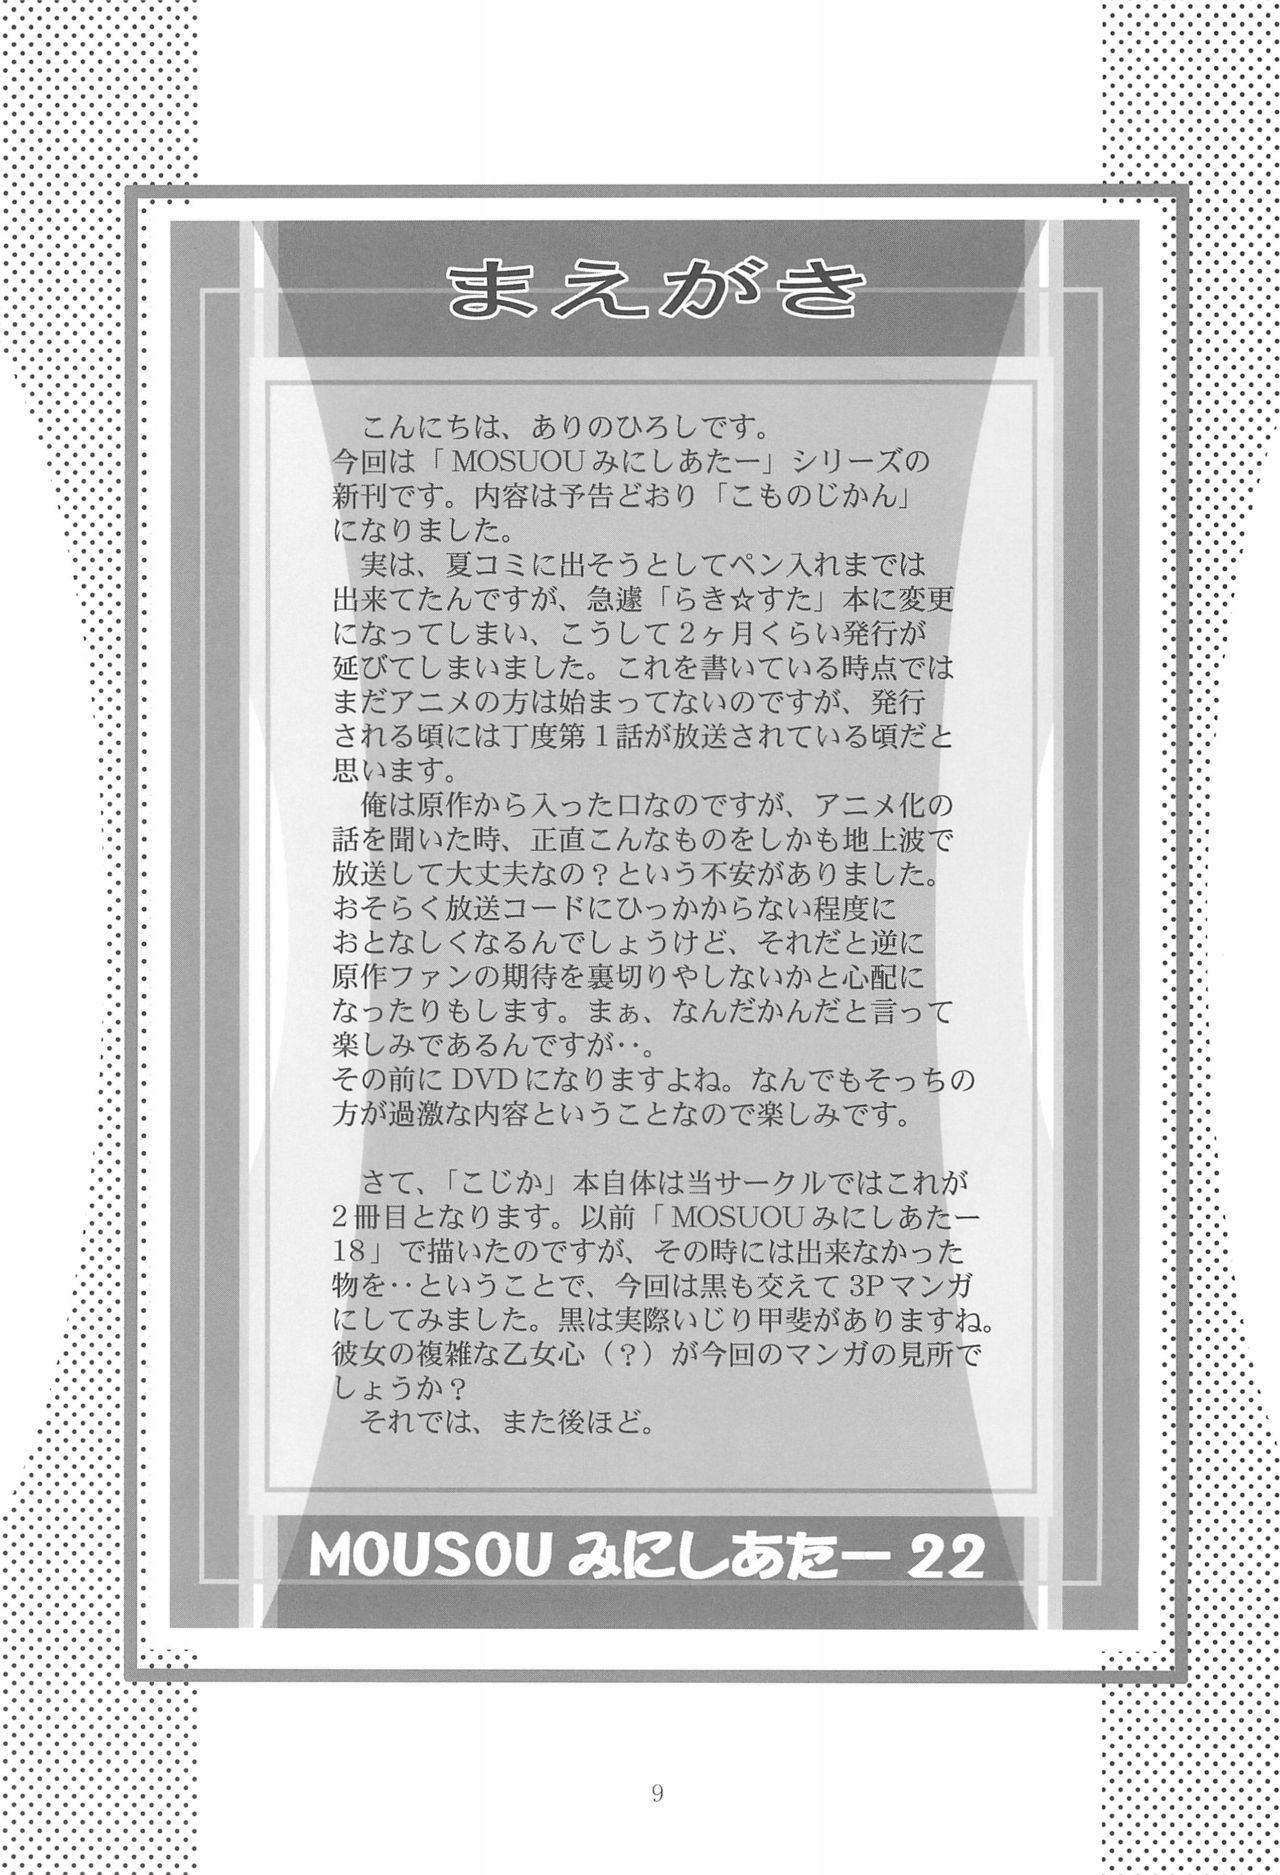 Fitness MOUSOU Mini Theater 22 - Kodomo no jikan Amigos - Page 9